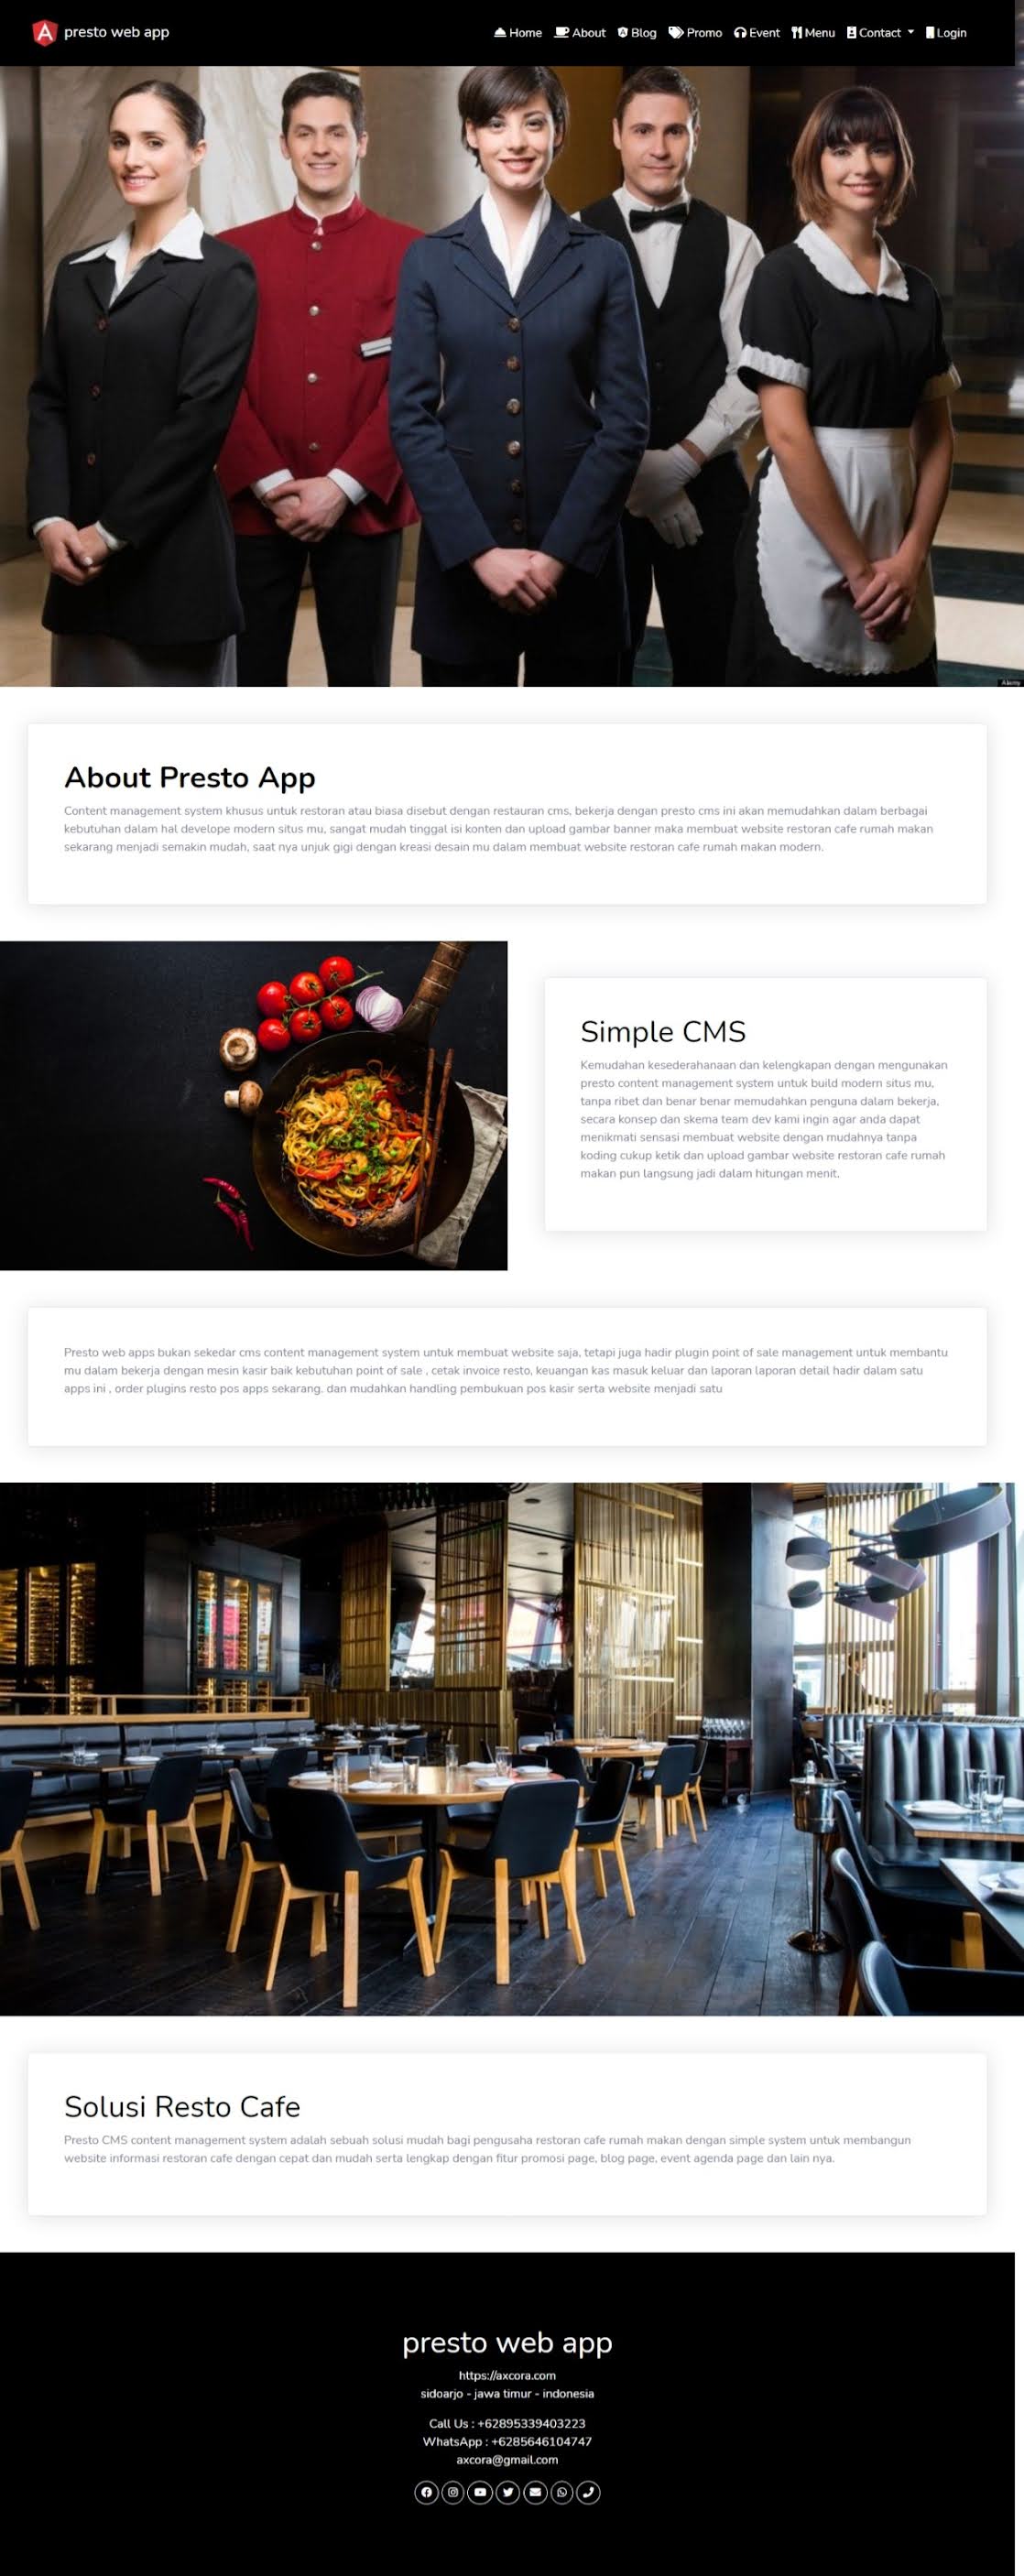 restoran online website aplikasi restoran cafe rumah makan